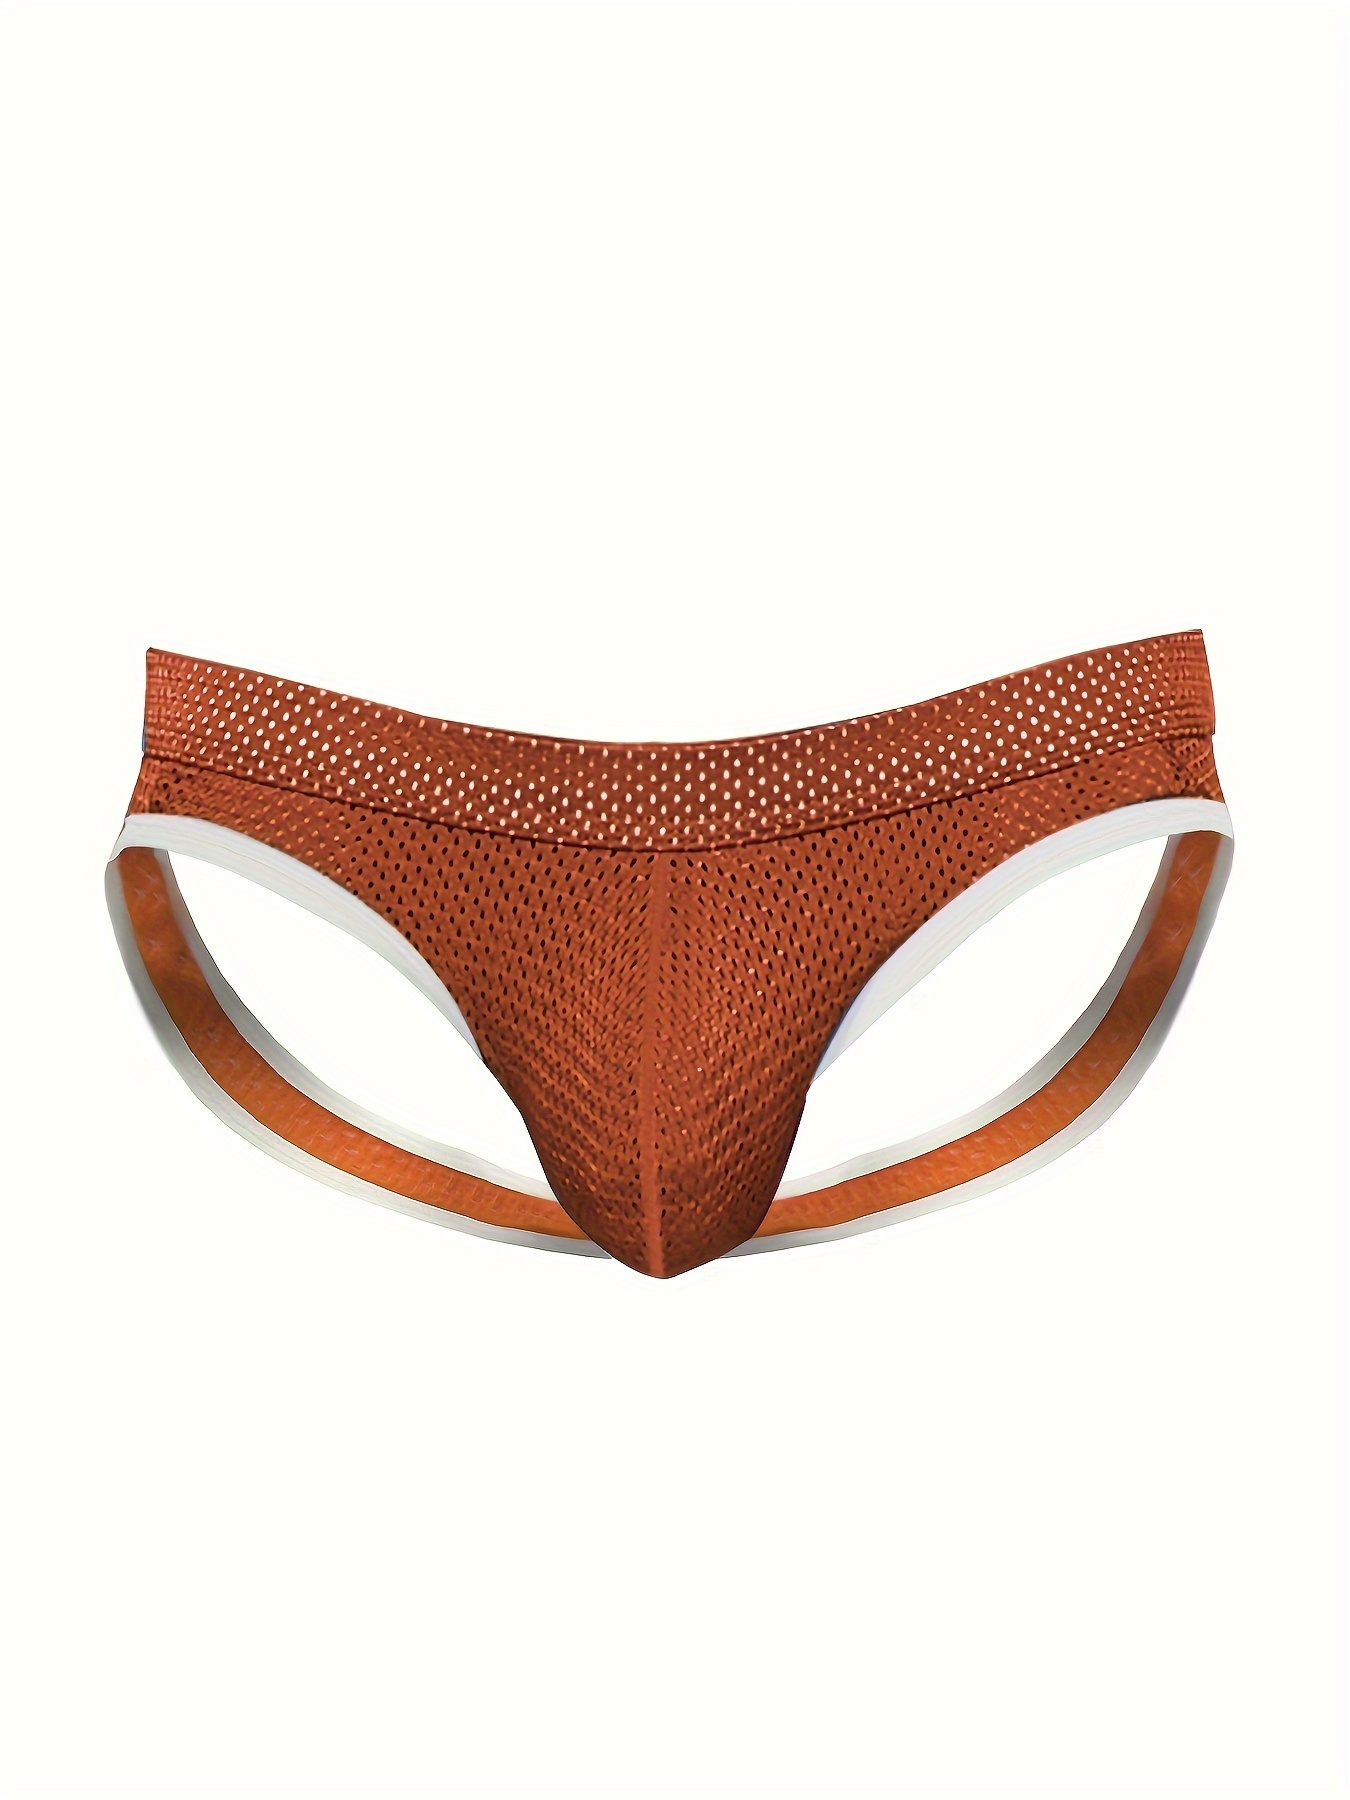 Nzwiluns Mens Jockstrap Underwear Sexy Jock Strap Low Waist Athletic  Supporter Jock Straps Boxer Brief Pouch Trunks Underwear : :  Clothing